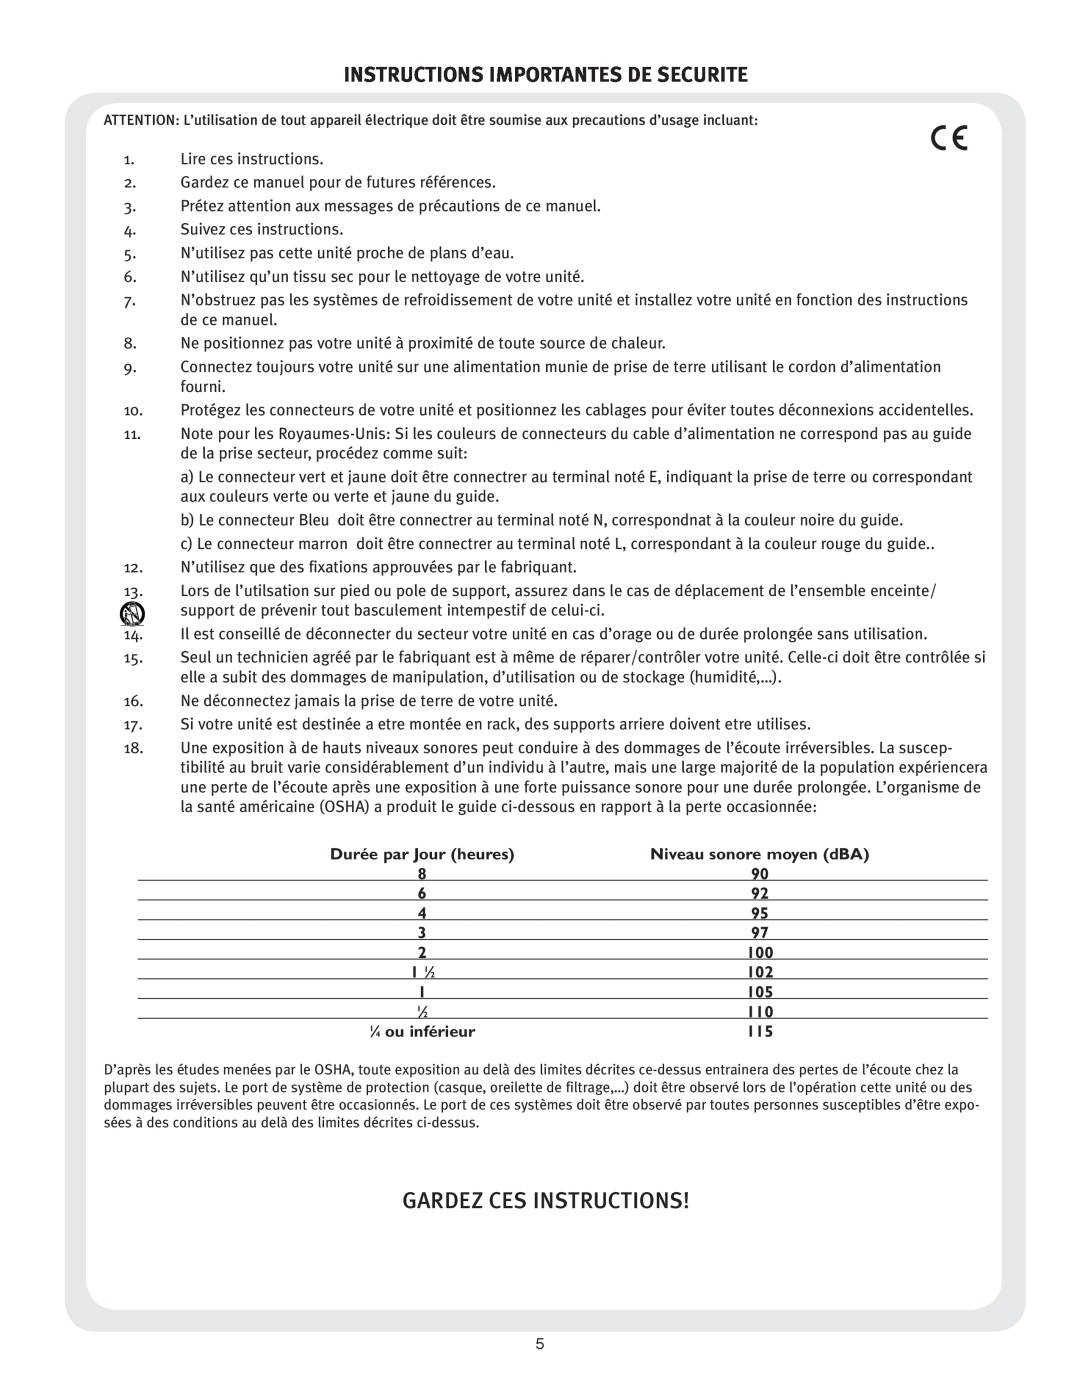 Peavey CS 800x4 owner manual Gardez Ces Instructions, Instructions Importantes De Securite 